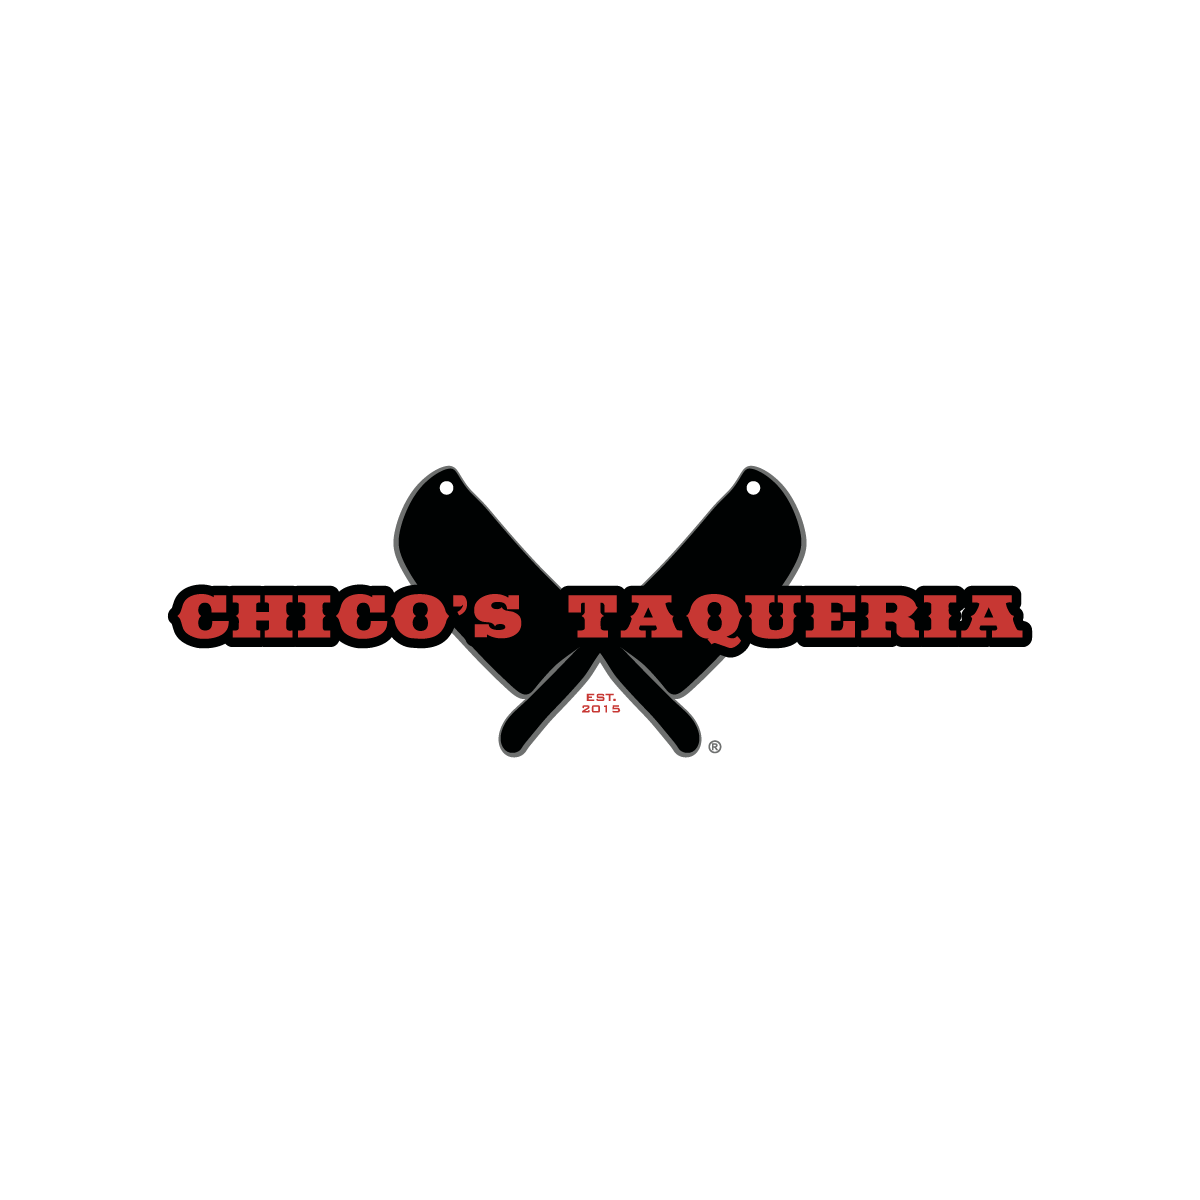 Chico's Taqueria